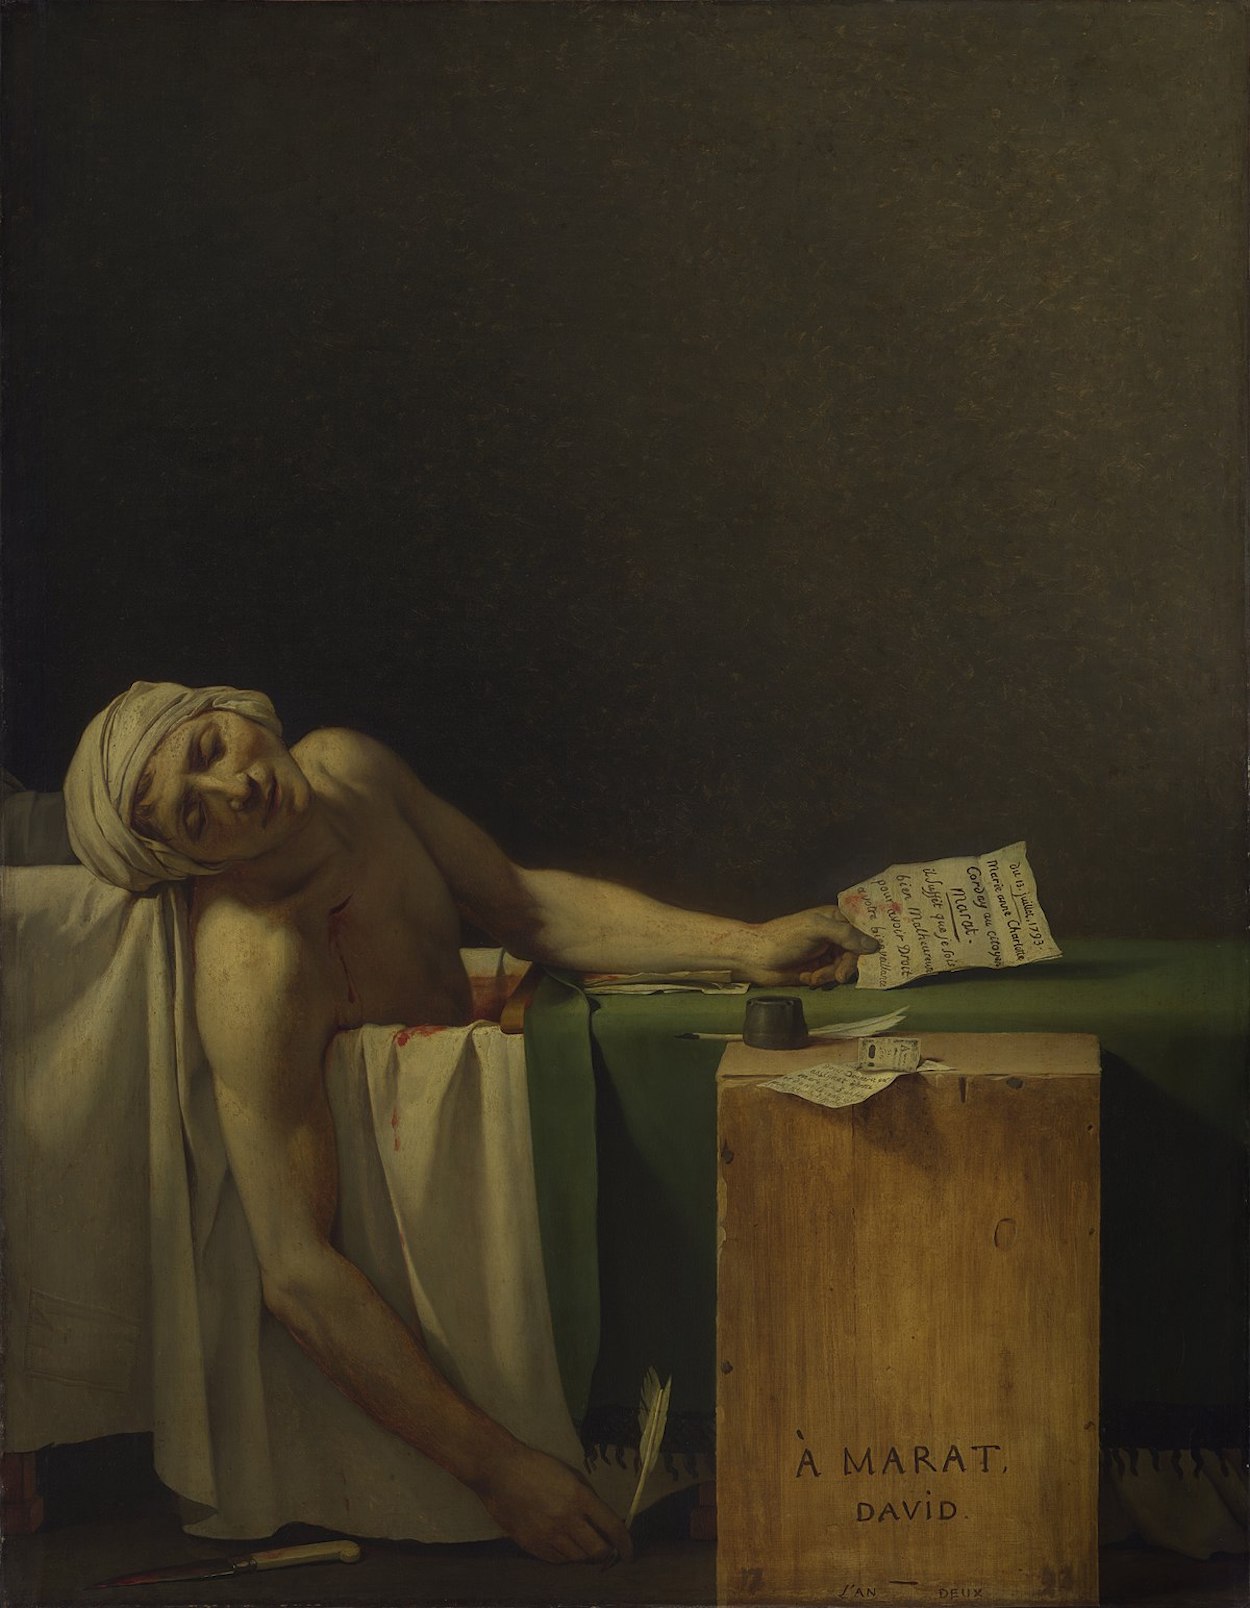 La muerte de Marat by Jacques-Louis David - 1793 - 162 × 128 cm Musées Royaux des Beaux-Arts de Belgique